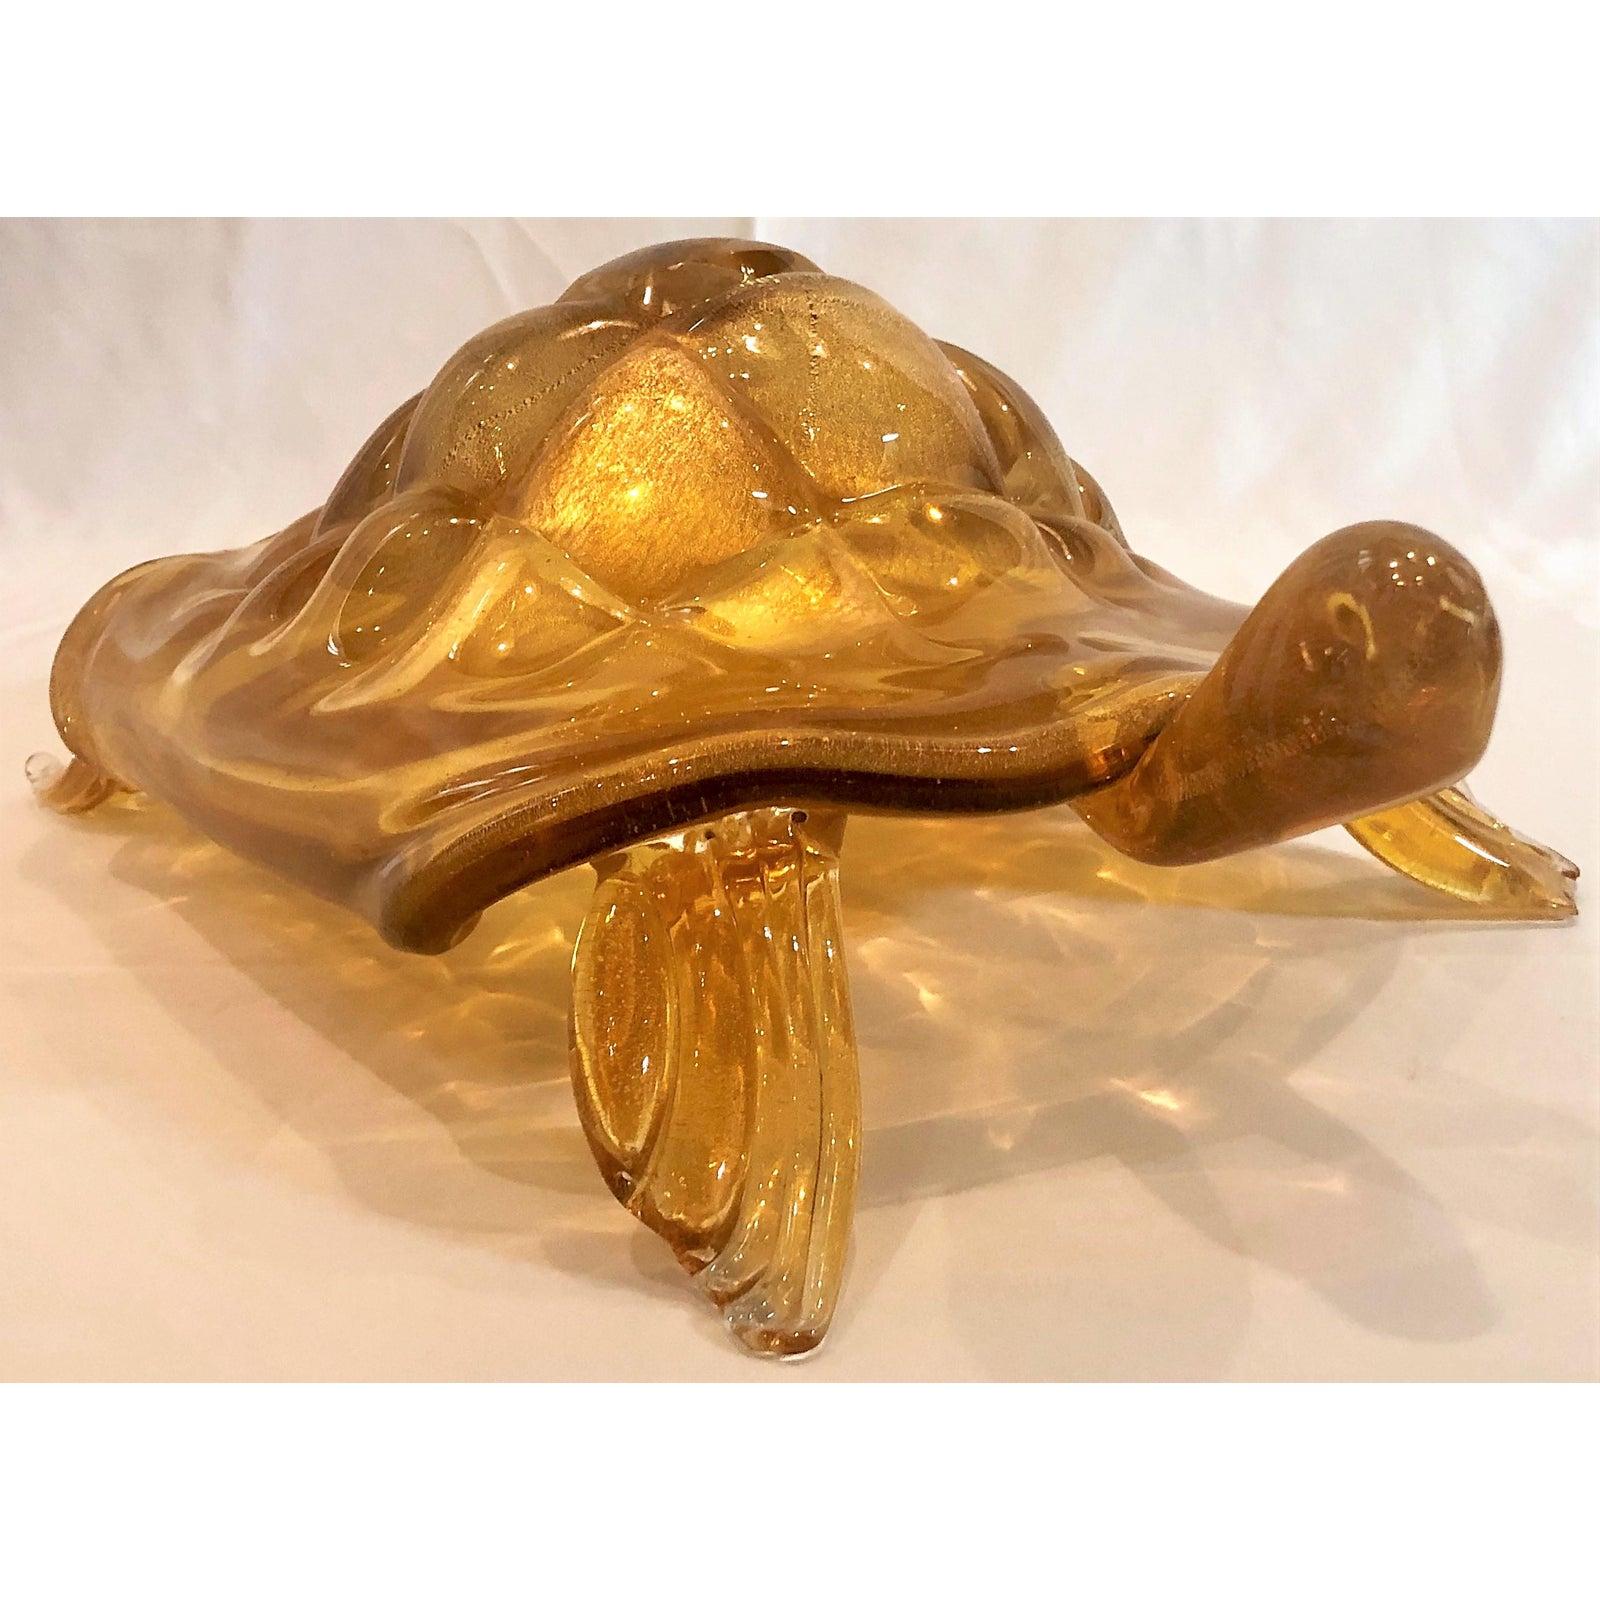 Succession de tortues en verre italien de Murano. Son expression fantaisiste et ses couleurs ravissantes vous feront sourire, vous et vos invités.